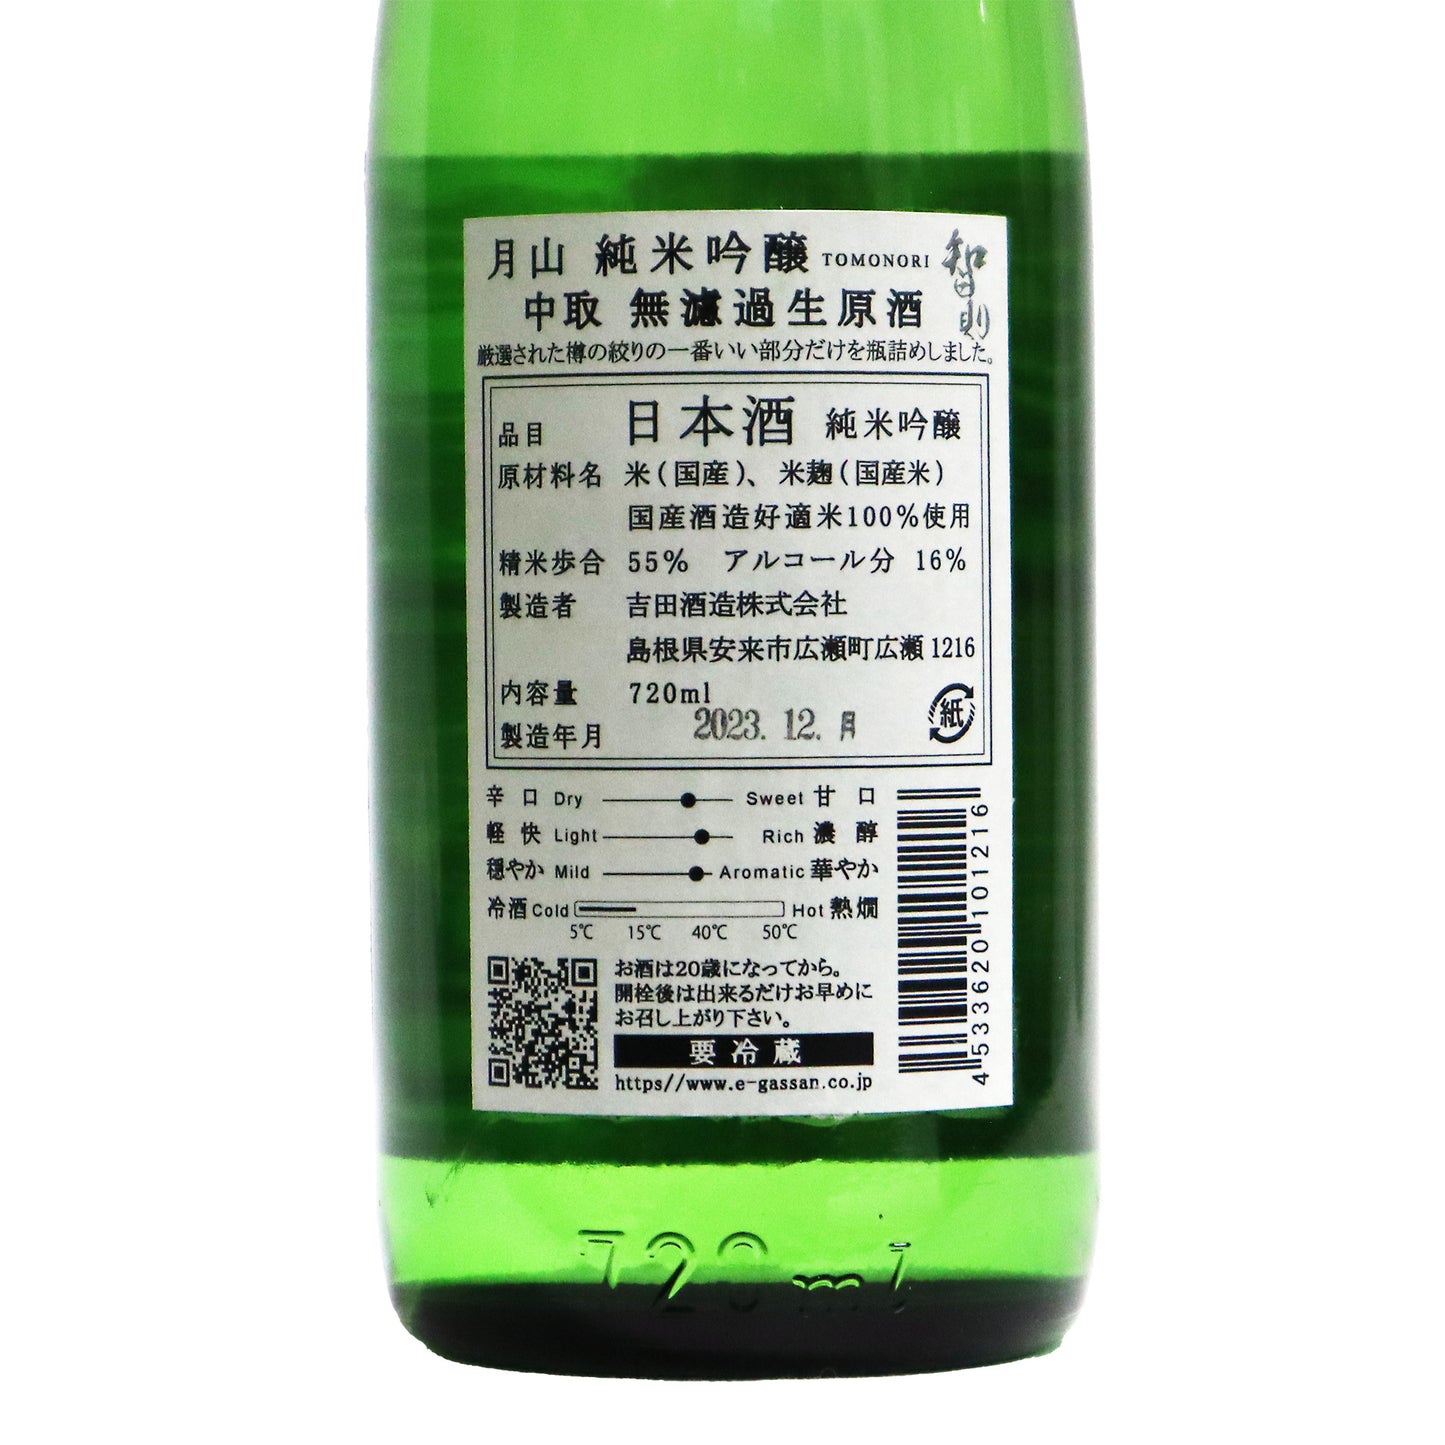 【智則】無濾過生原酒 中取り 純米吟醸 720ml/吉田酒造株式会社